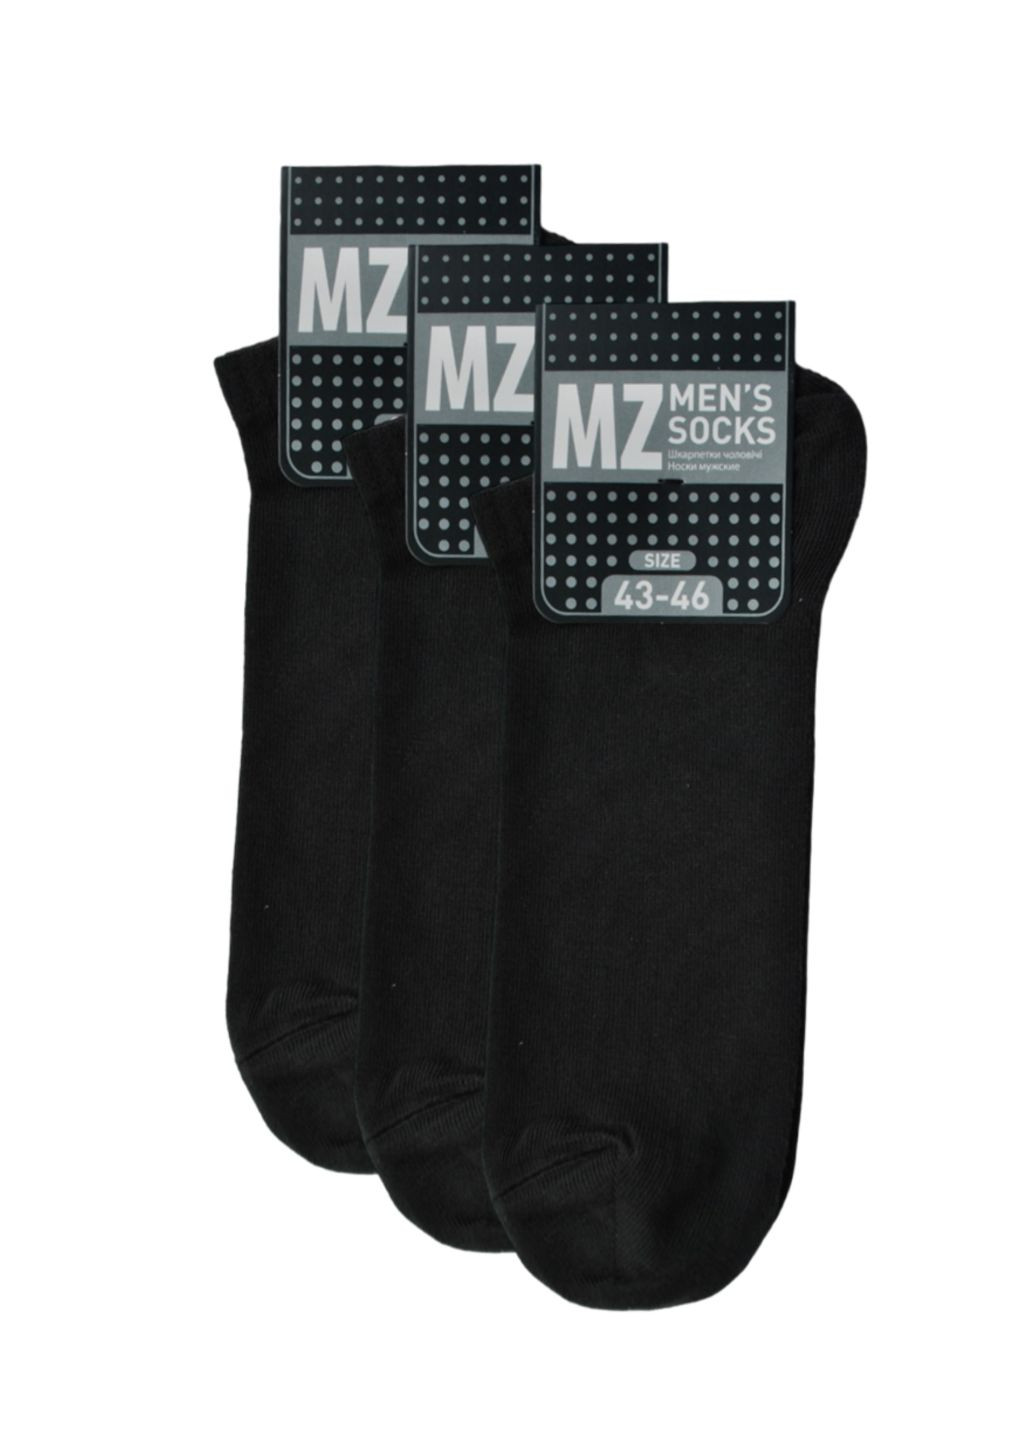 NTF Шкарпетки чол. (ультракороткі) MS1C/Sl-cl, р.39-42, black. Набір (3 шт.) MZ ms1c_sl-cl (259038701)